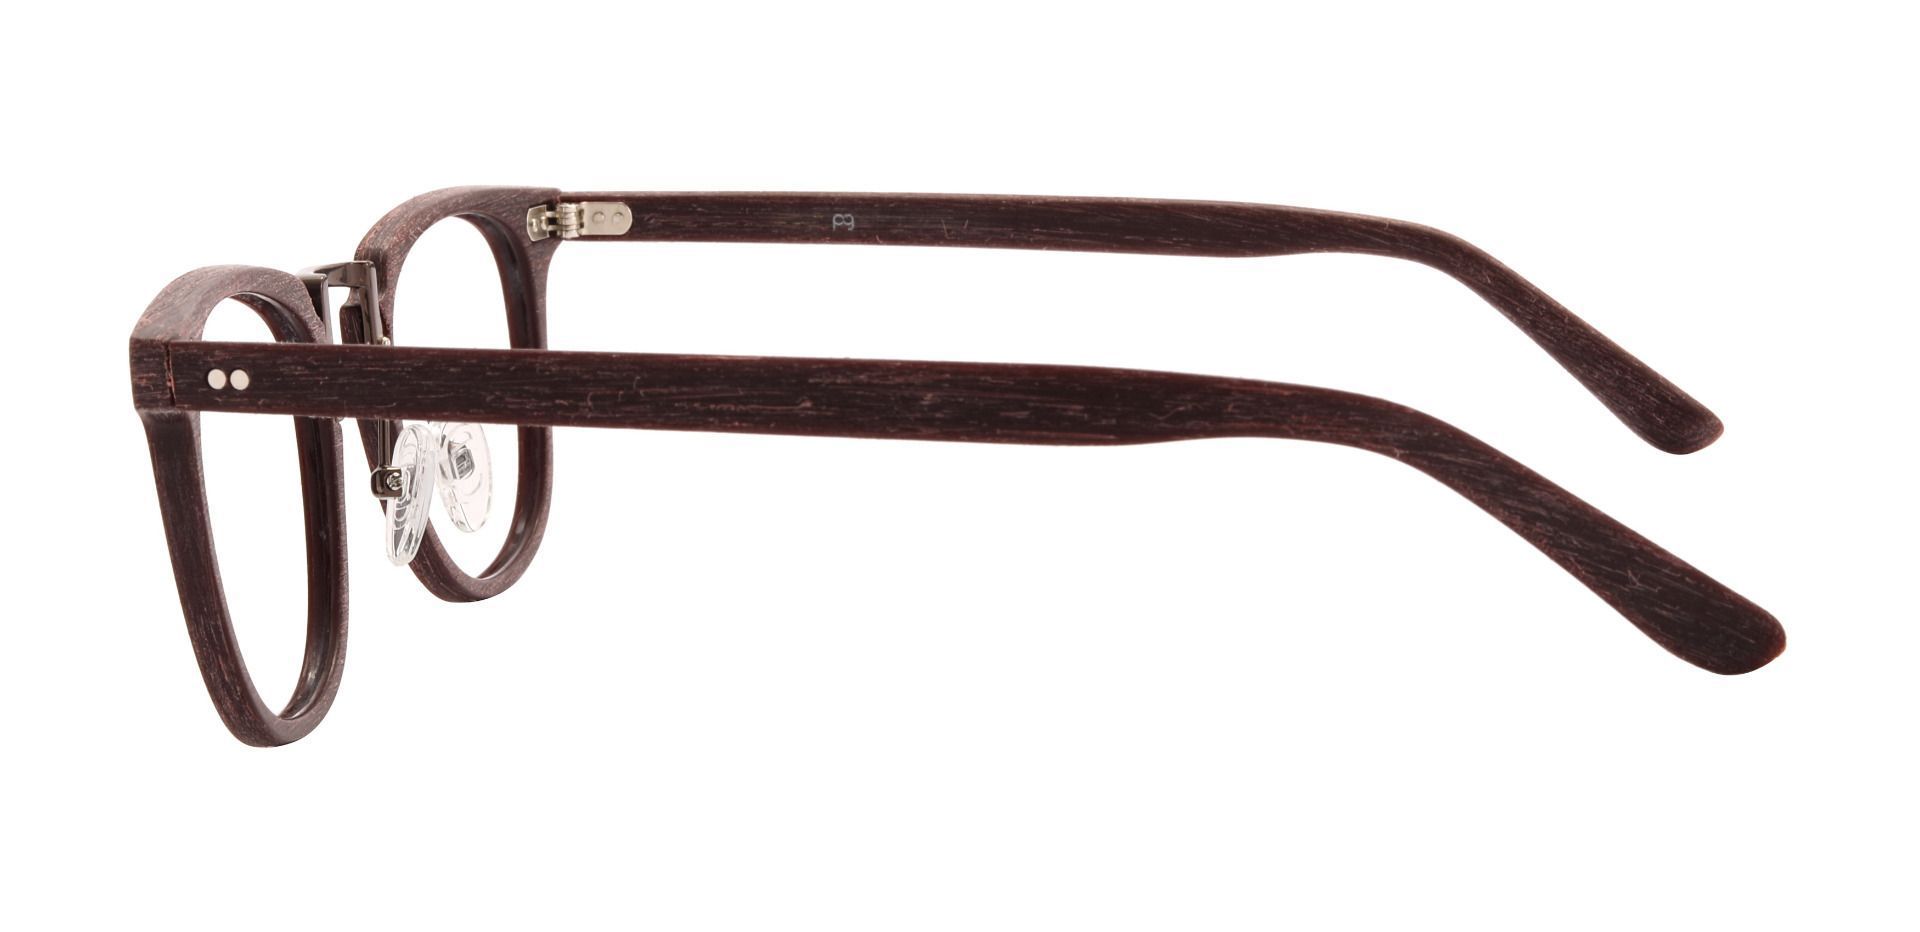 Ember Square Prescription Glasses - Brown